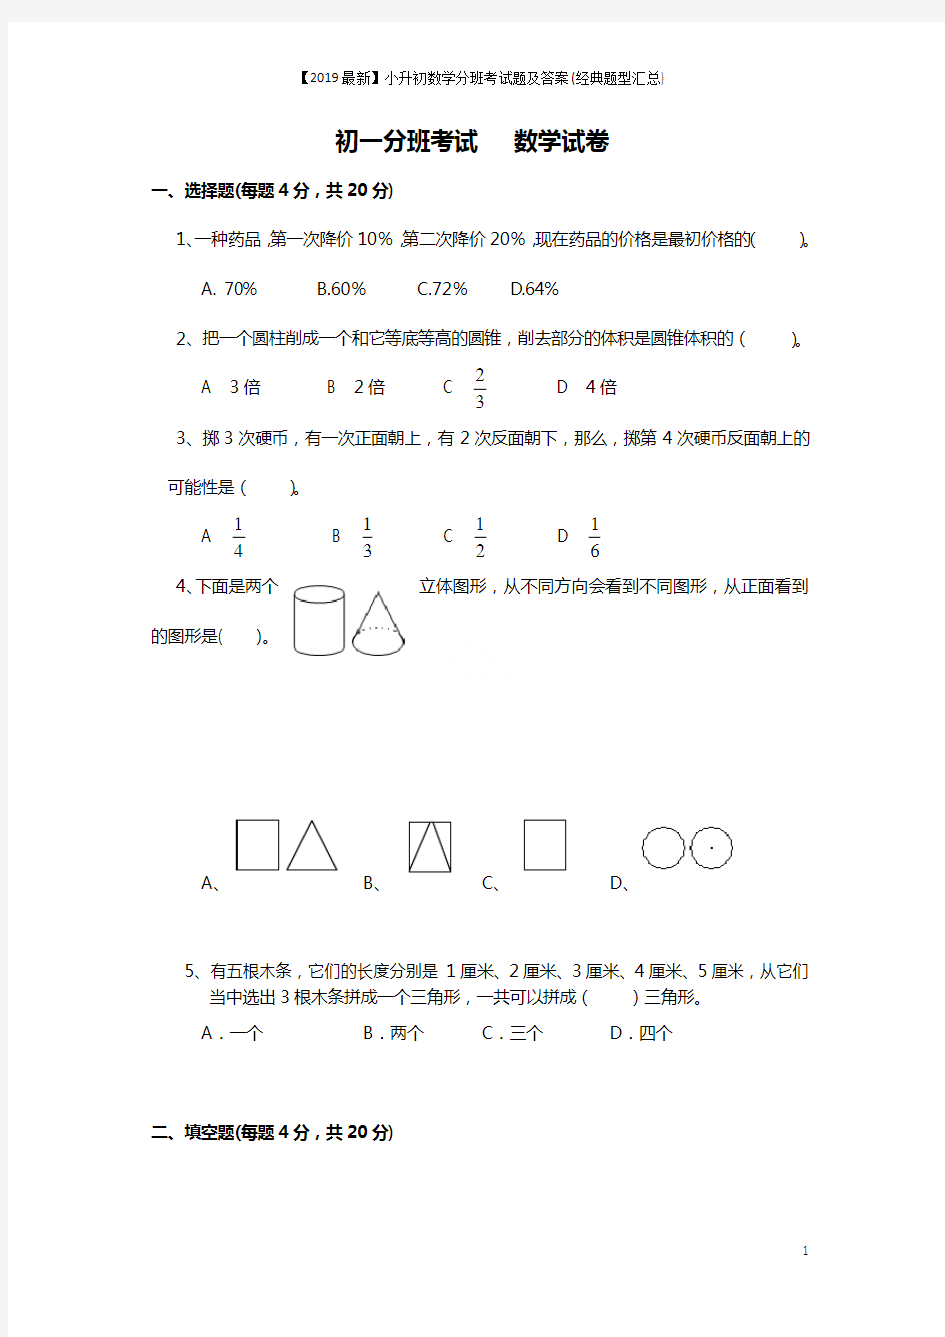 【2019最新】小升初数学分班考试题及答案(经典题型汇总)